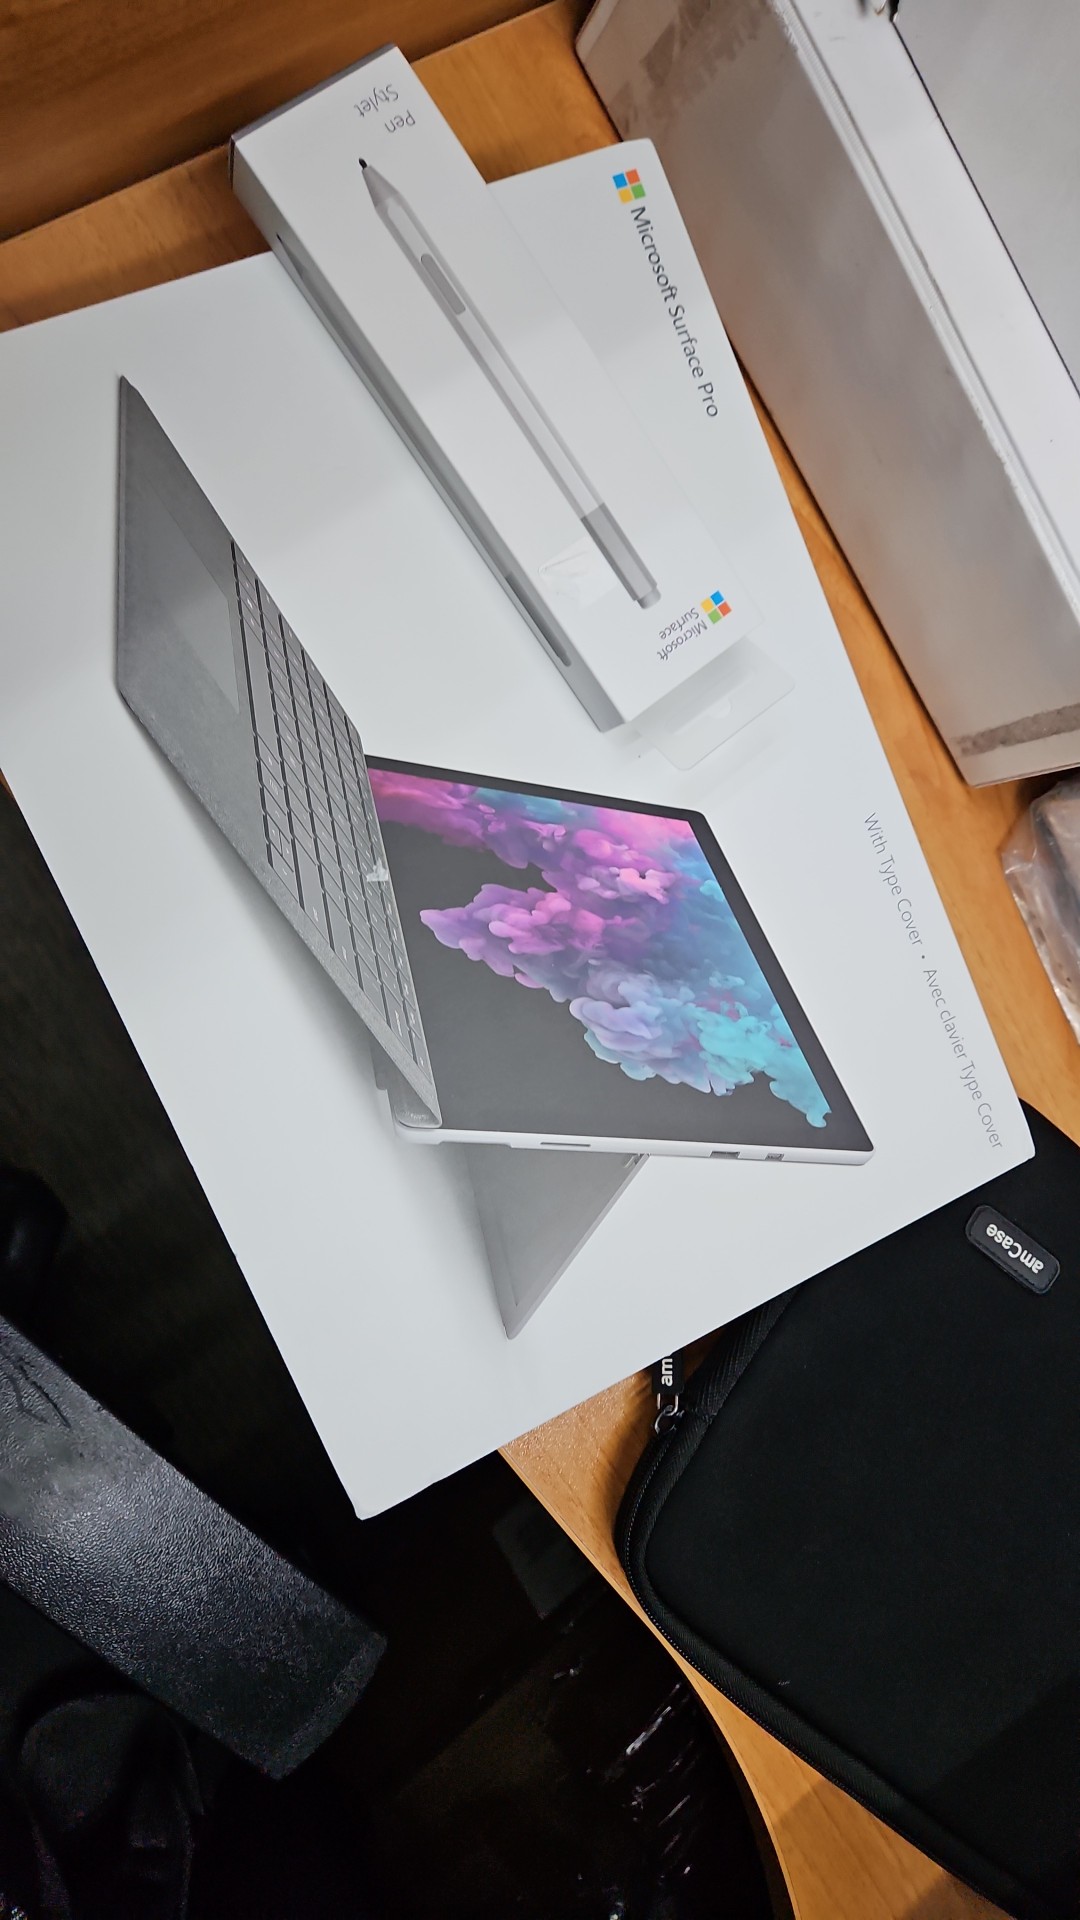 computadoras y laptops - Surface Pro 6 8gb RAM 128gb SSD teclado, lápiz y su caja